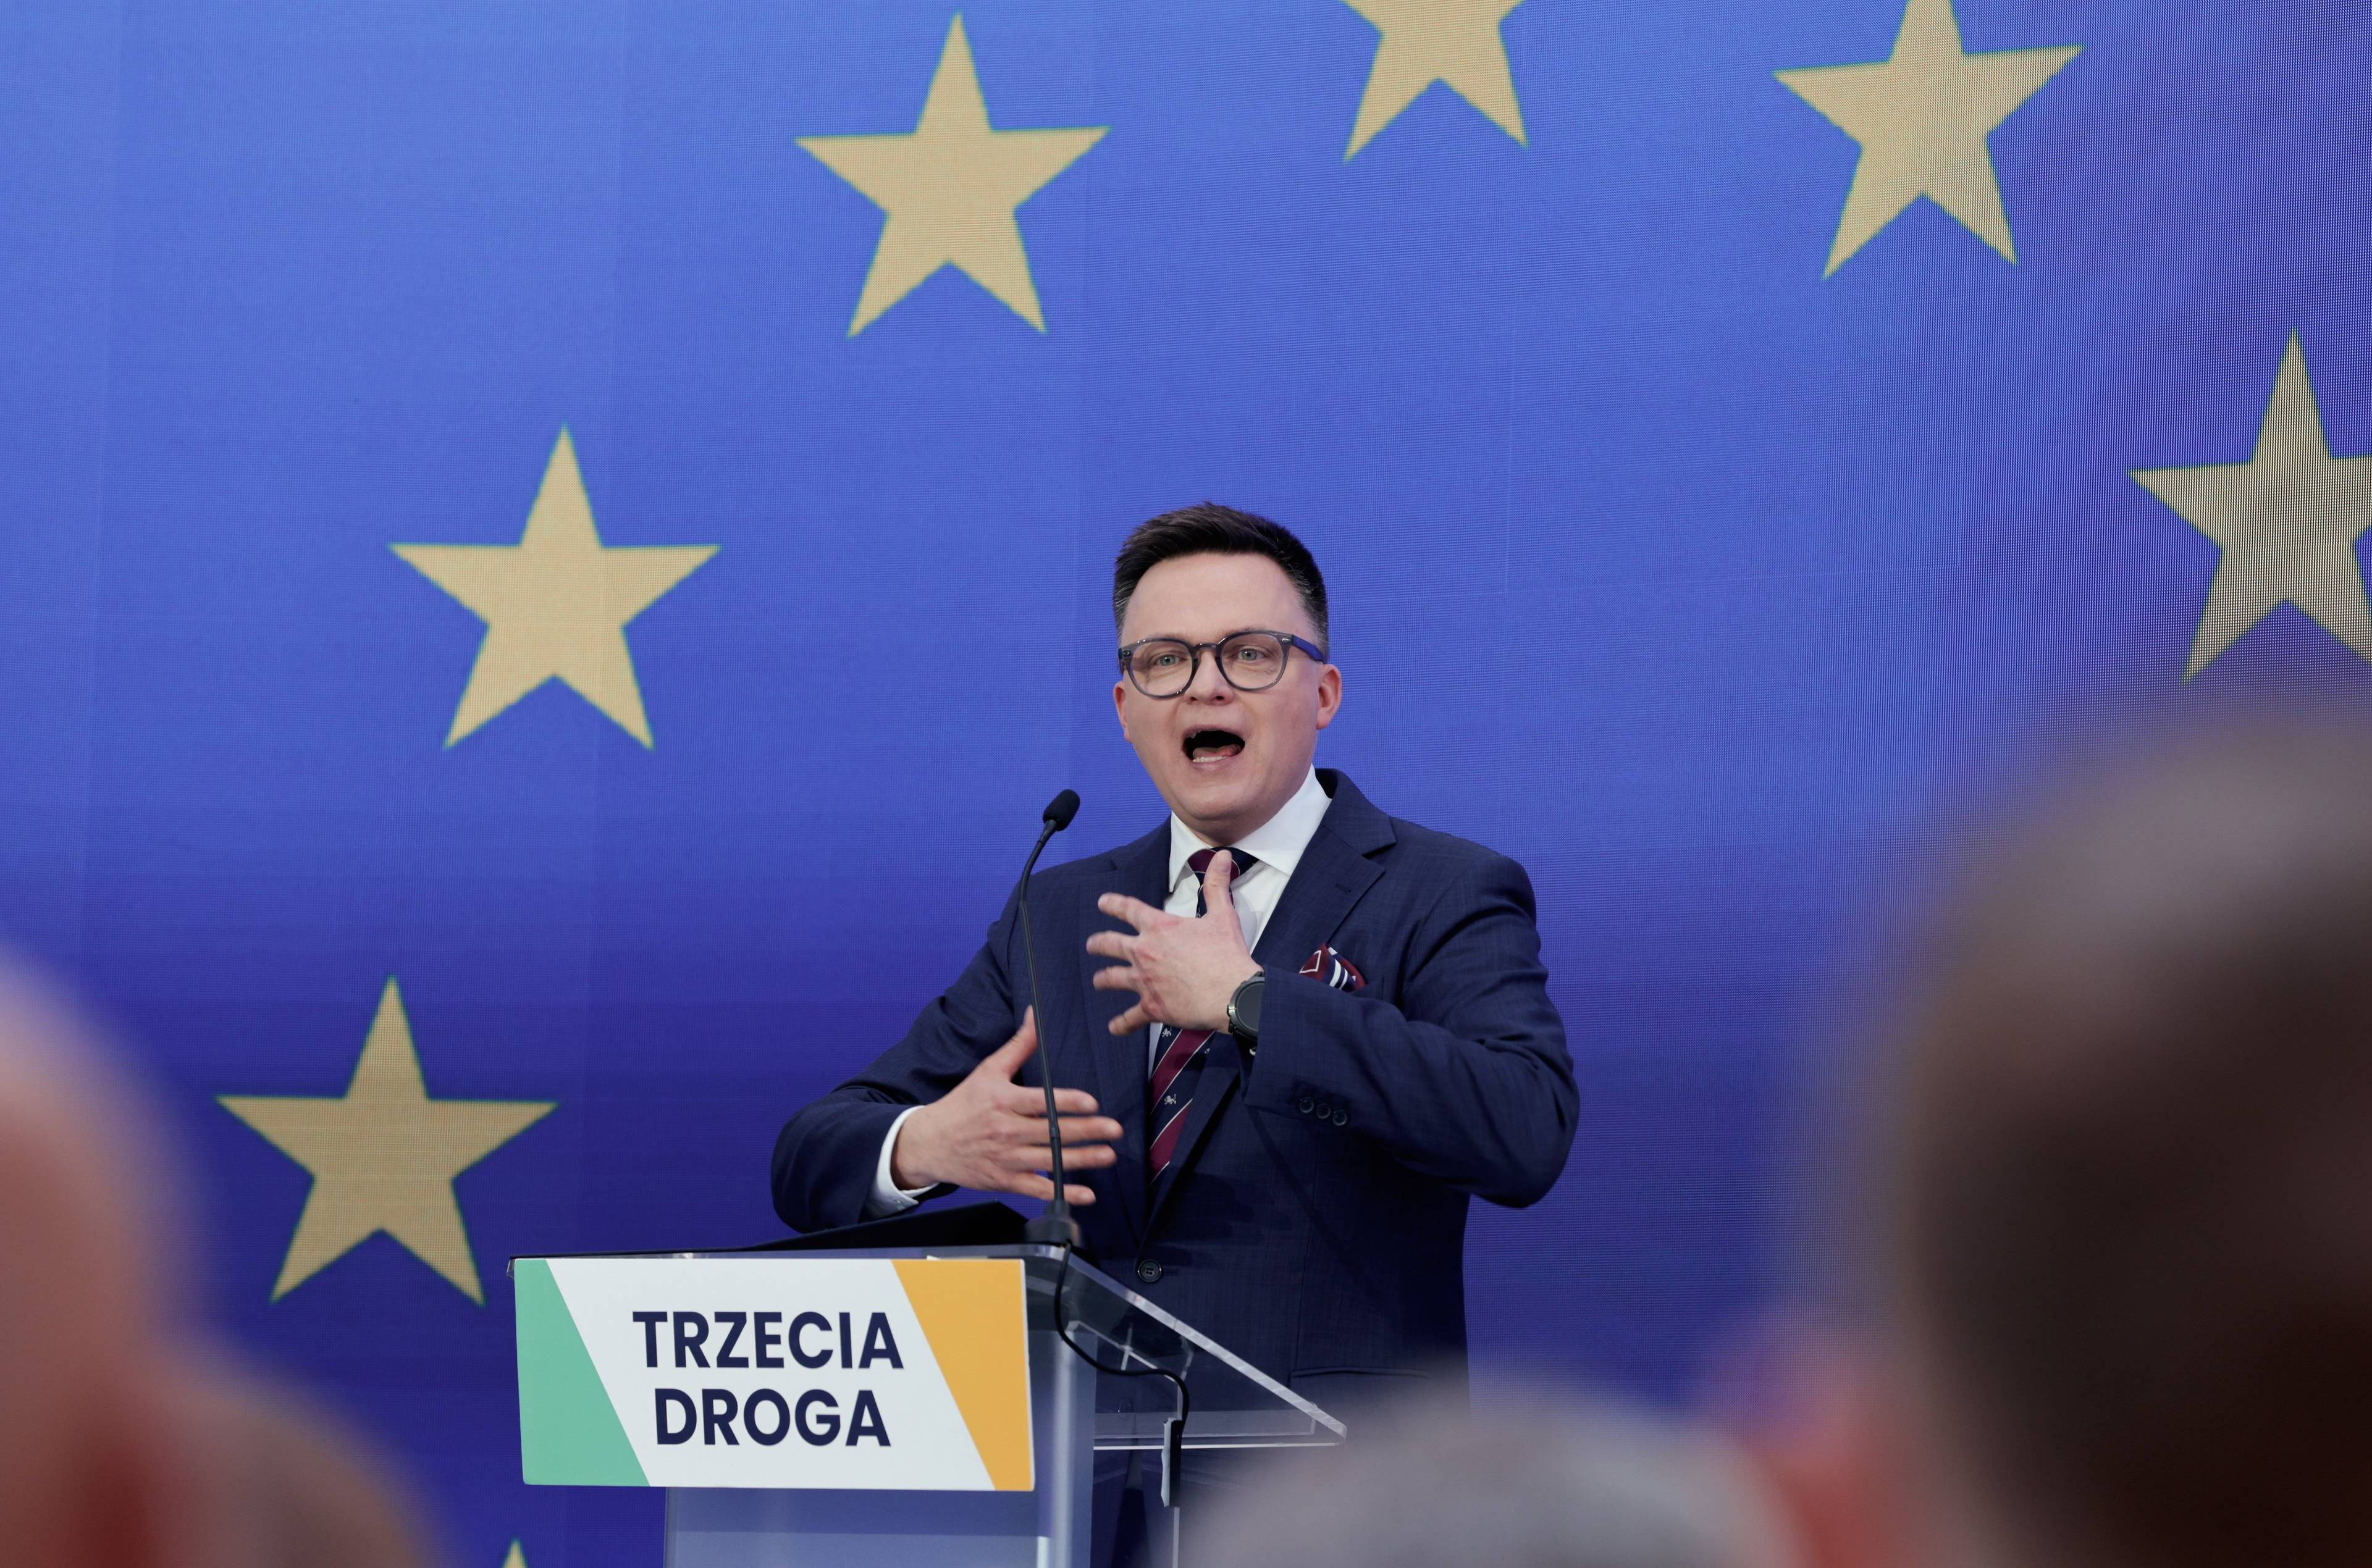 Szymon Hołownia przemawia na konwencji przed eurowyborami. Stoi za mównicą z napisem "Trzecia Droga", za nim niebieskie tło i gwiazdki z flagi Unii Europejskiej. Wybory europejskie